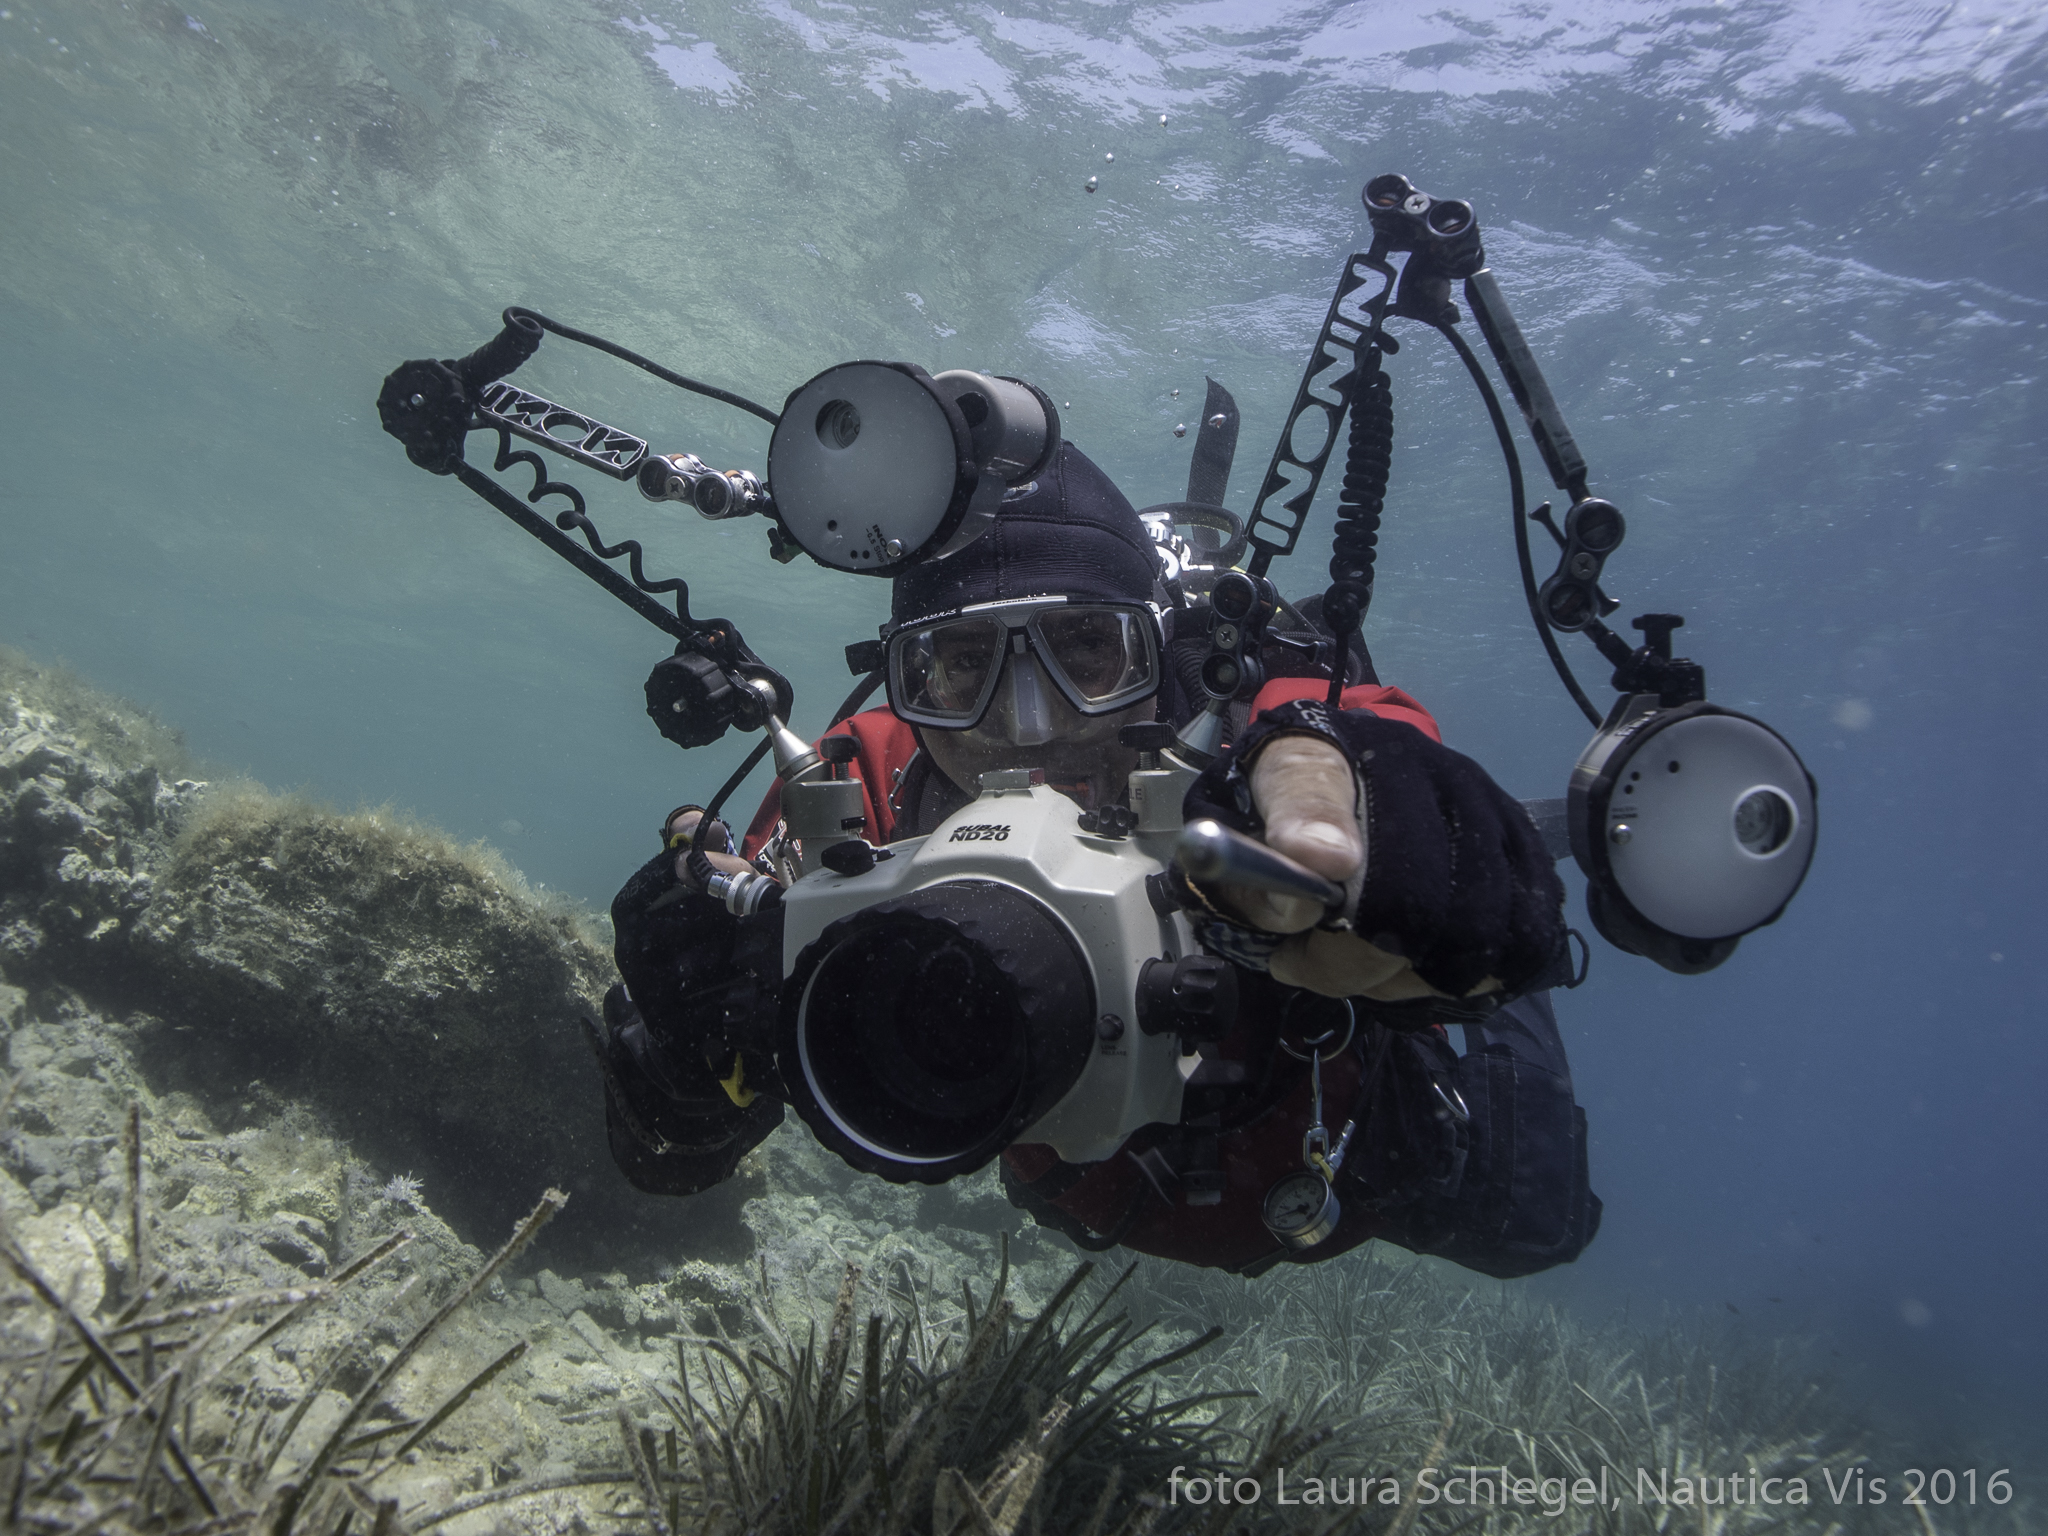 Piotr Stós unter Wasser mit Kameraausrüstung